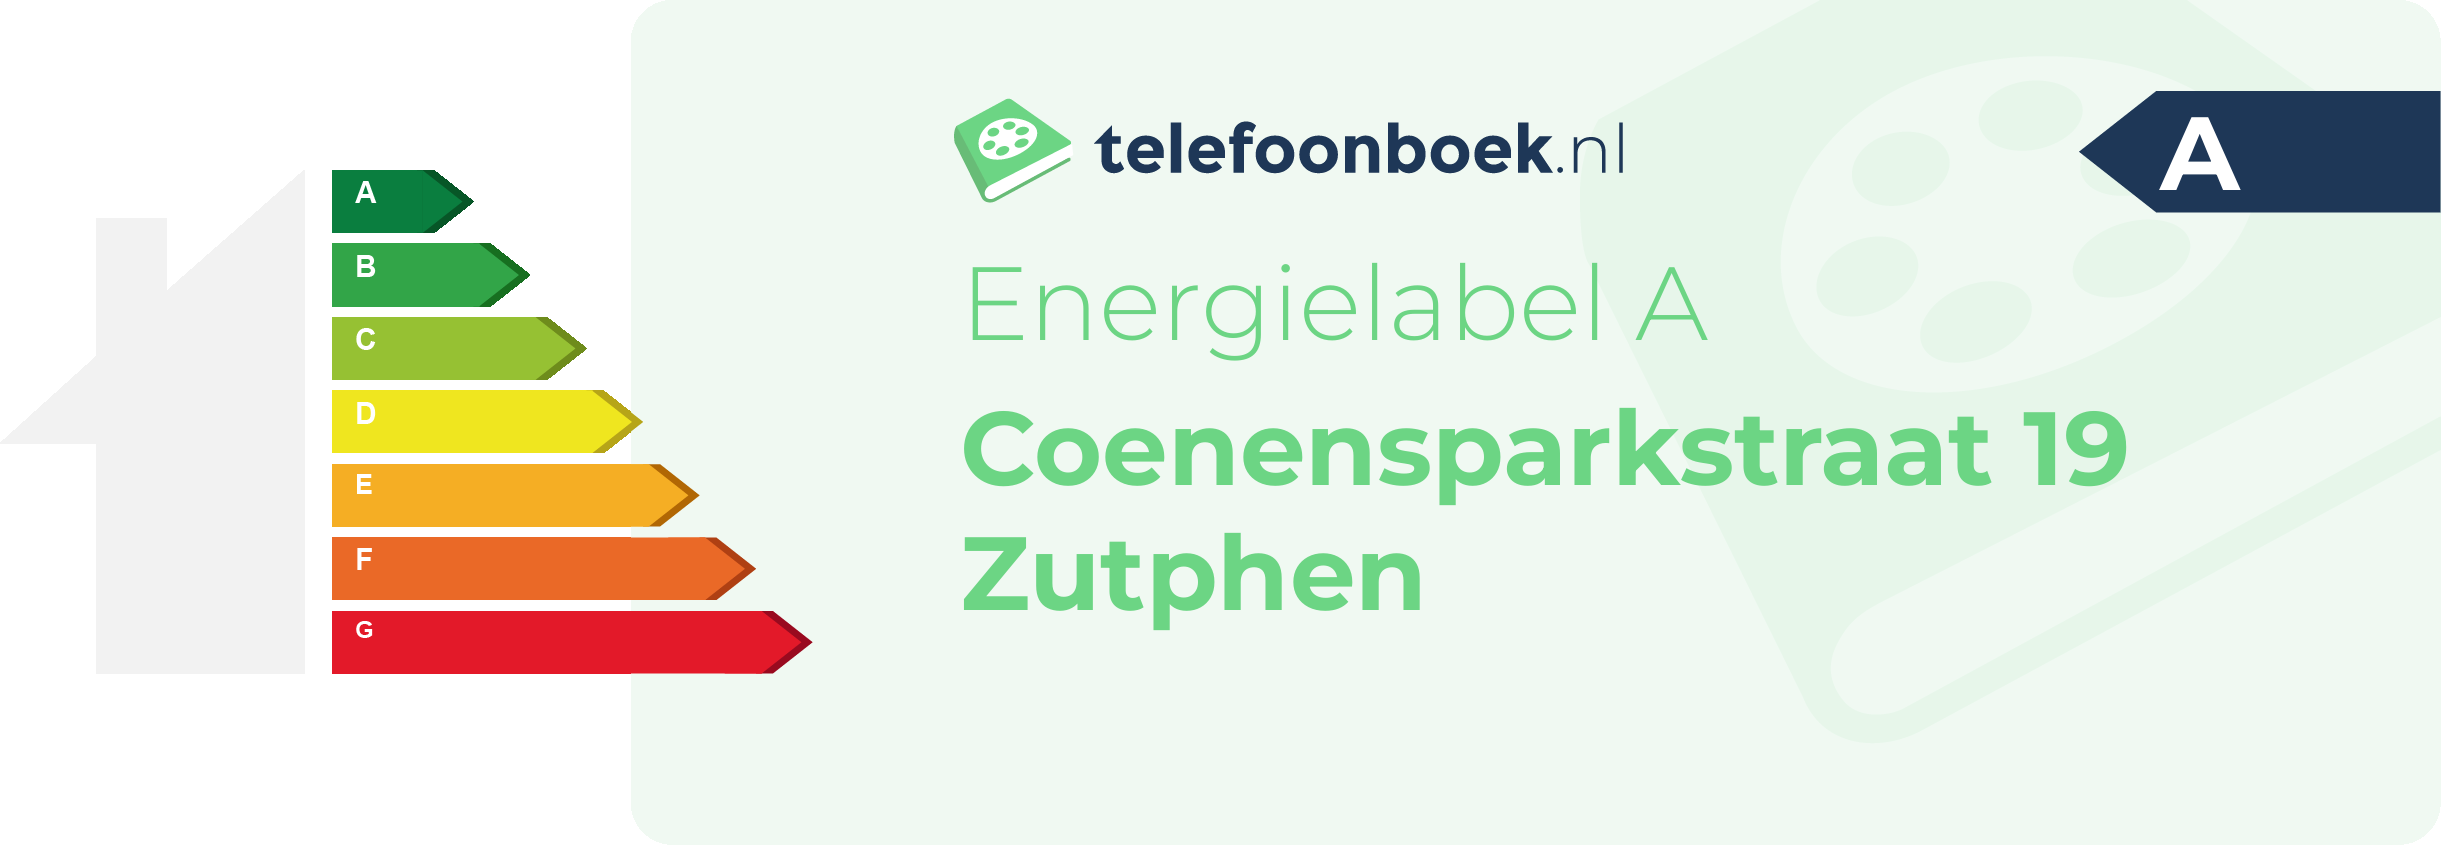 Energielabel Coenensparkstraat 19 Zutphen